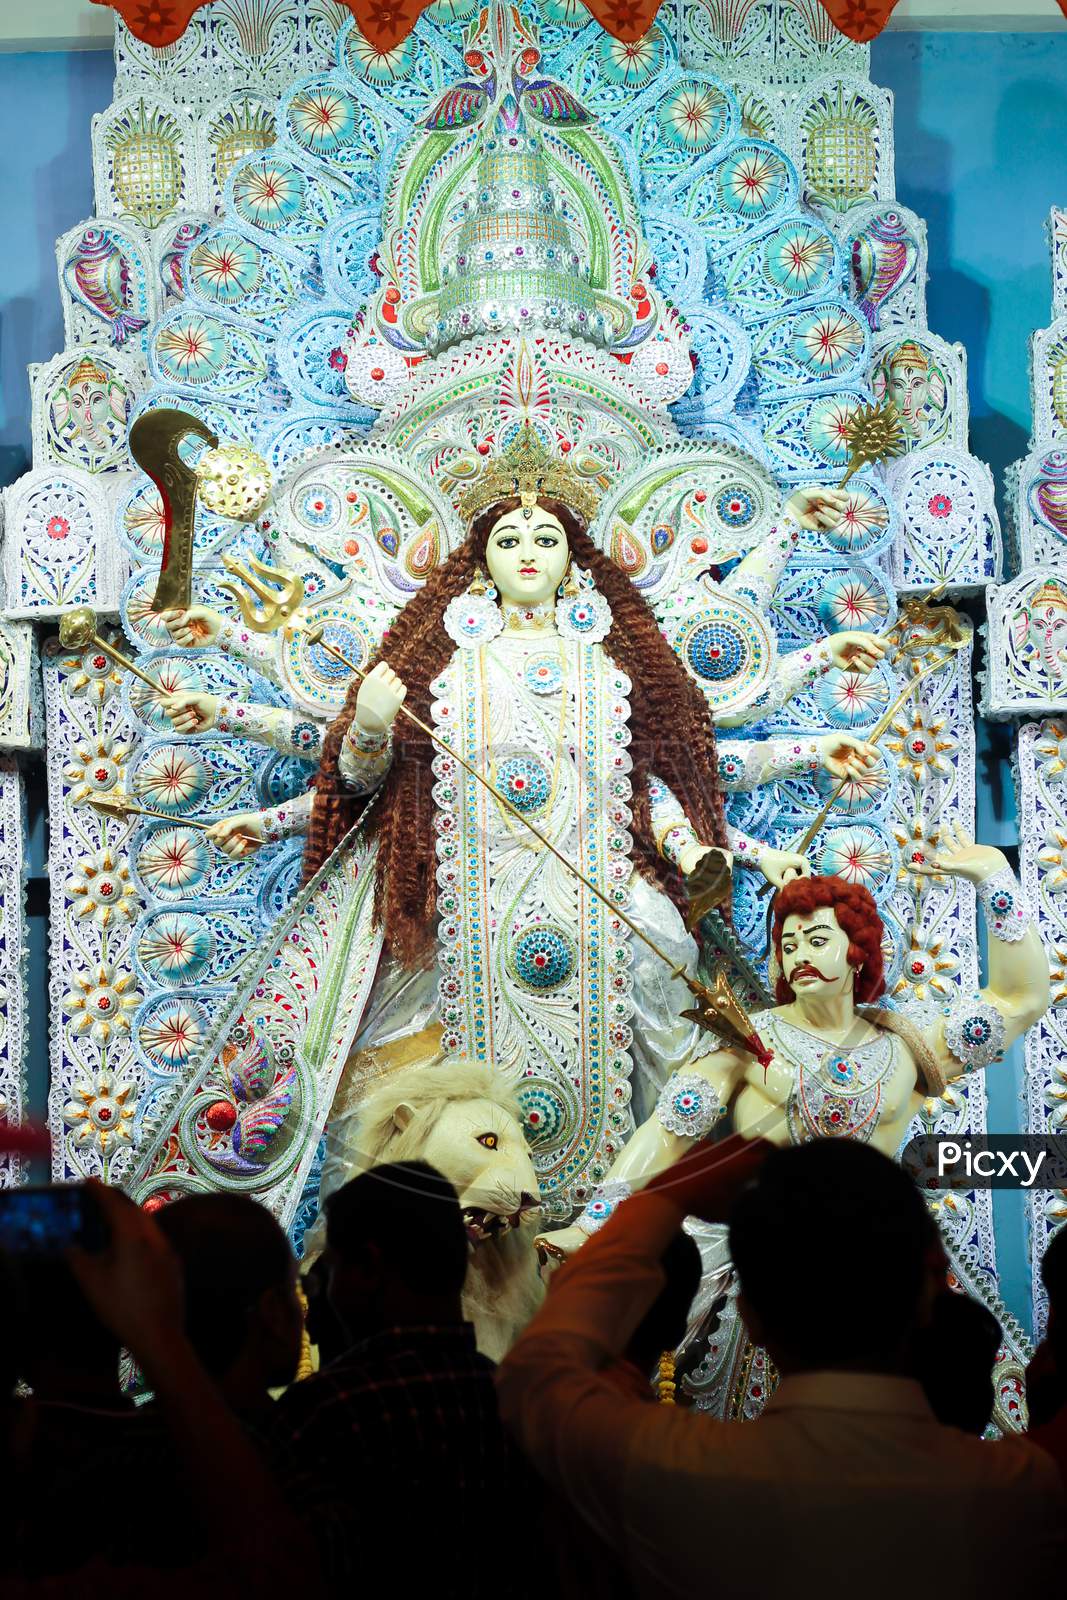 Maa Durga with crowd